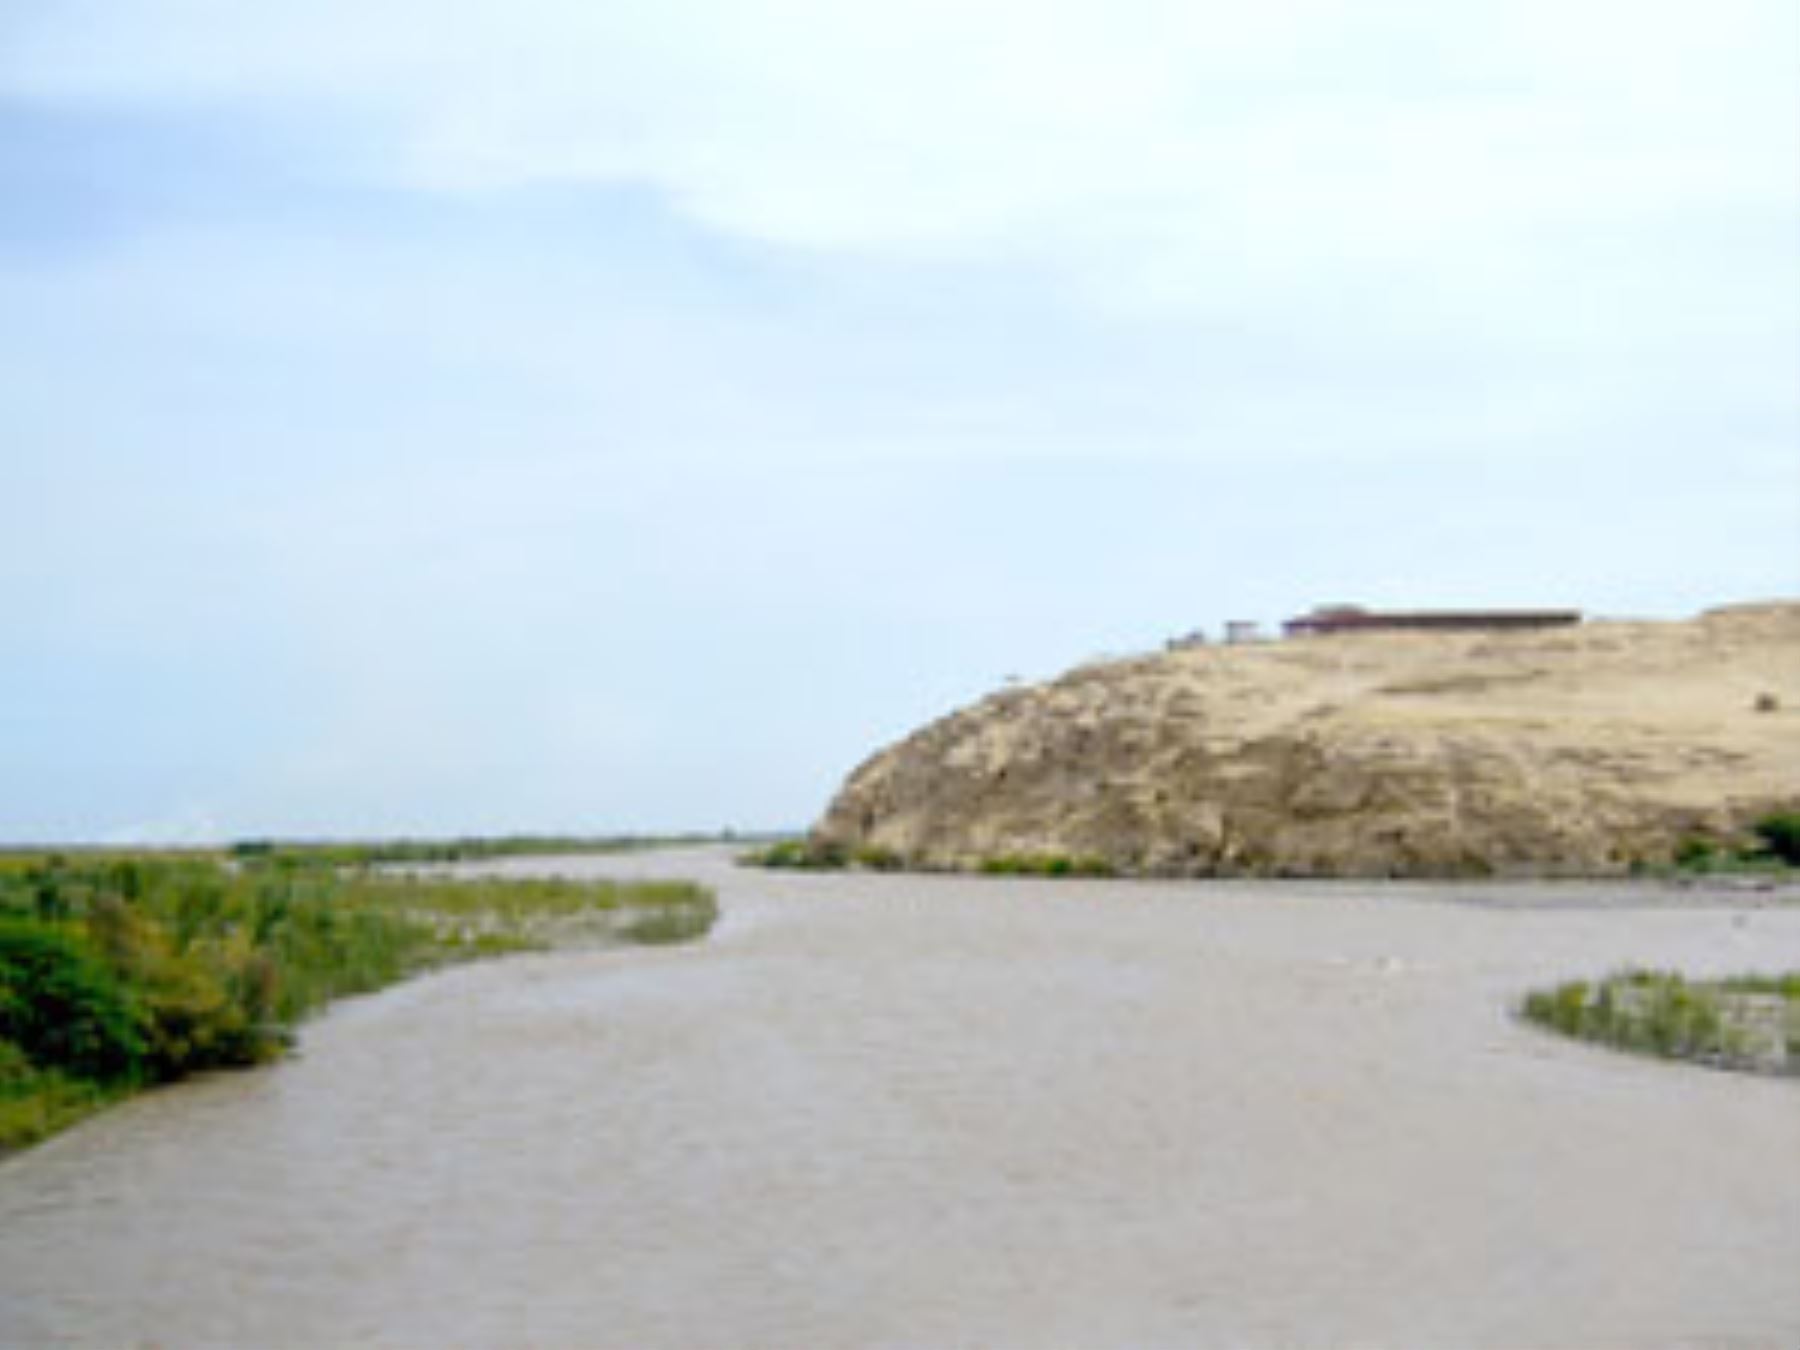 En más de 50% aumentó el caudal de los ríos Camaná y Ocoña, en la región Arequipa, debido a las lluvias intensas que se registran en los últimos días en la sierra central y sur del Perú, informó hoy el Servicio Nacional de Meteorología e Hidrología (Senamhi). ANDINA/Difusión